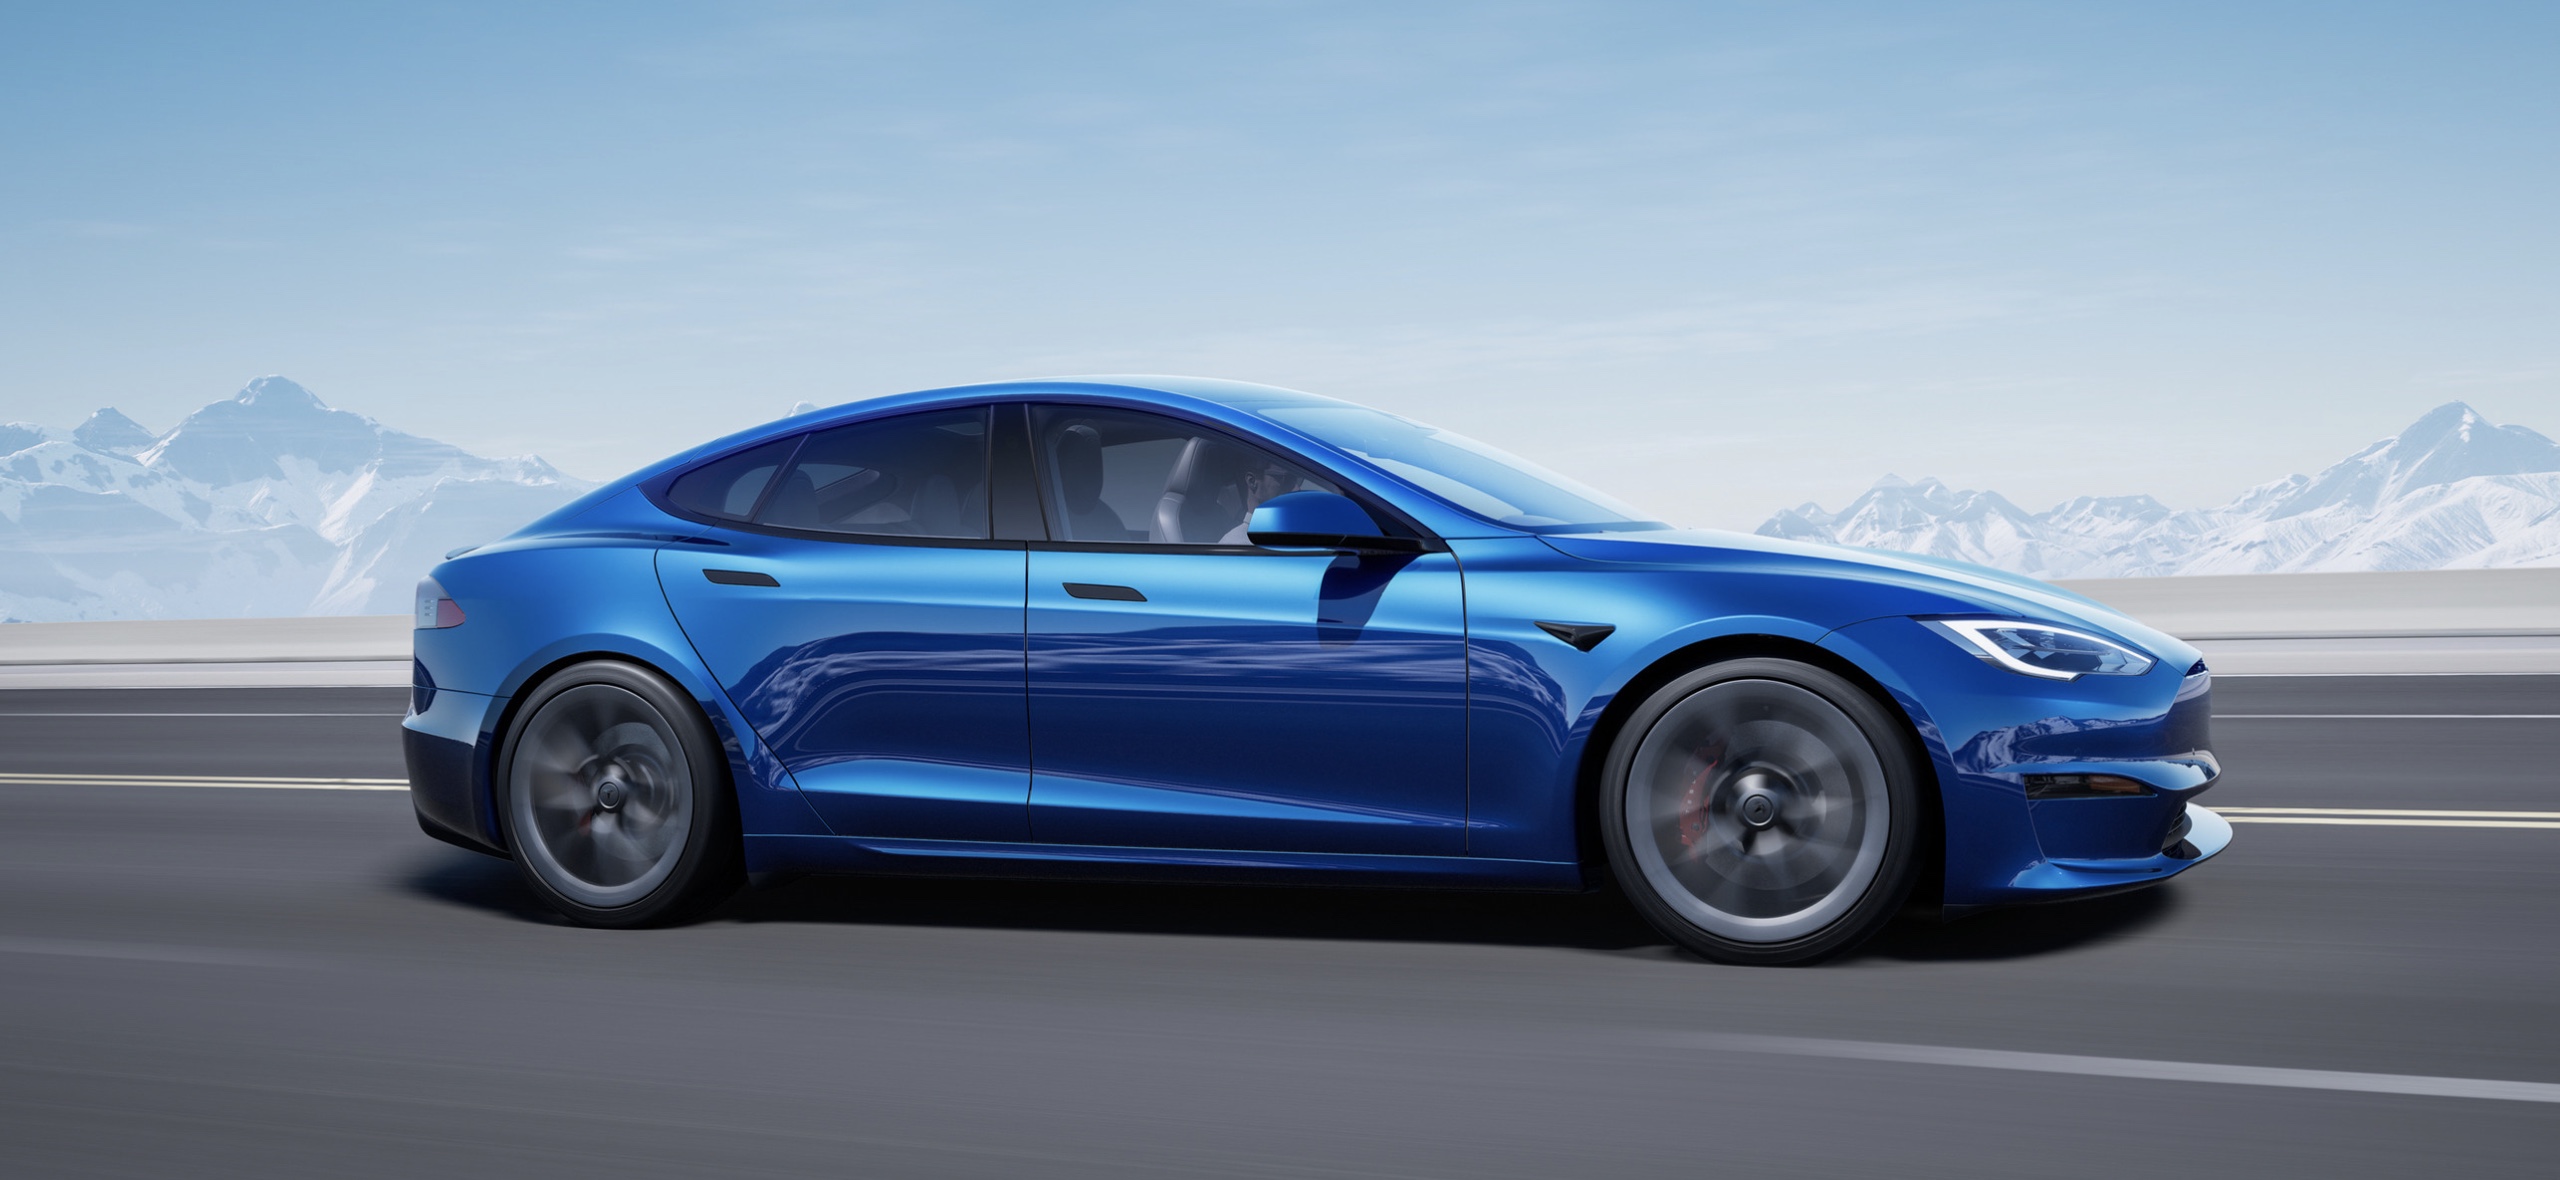 Wieg staart Van streek Tesla Model S Plaid receives 348-mile EPA rated range on 21-inch wheels -  Electrek